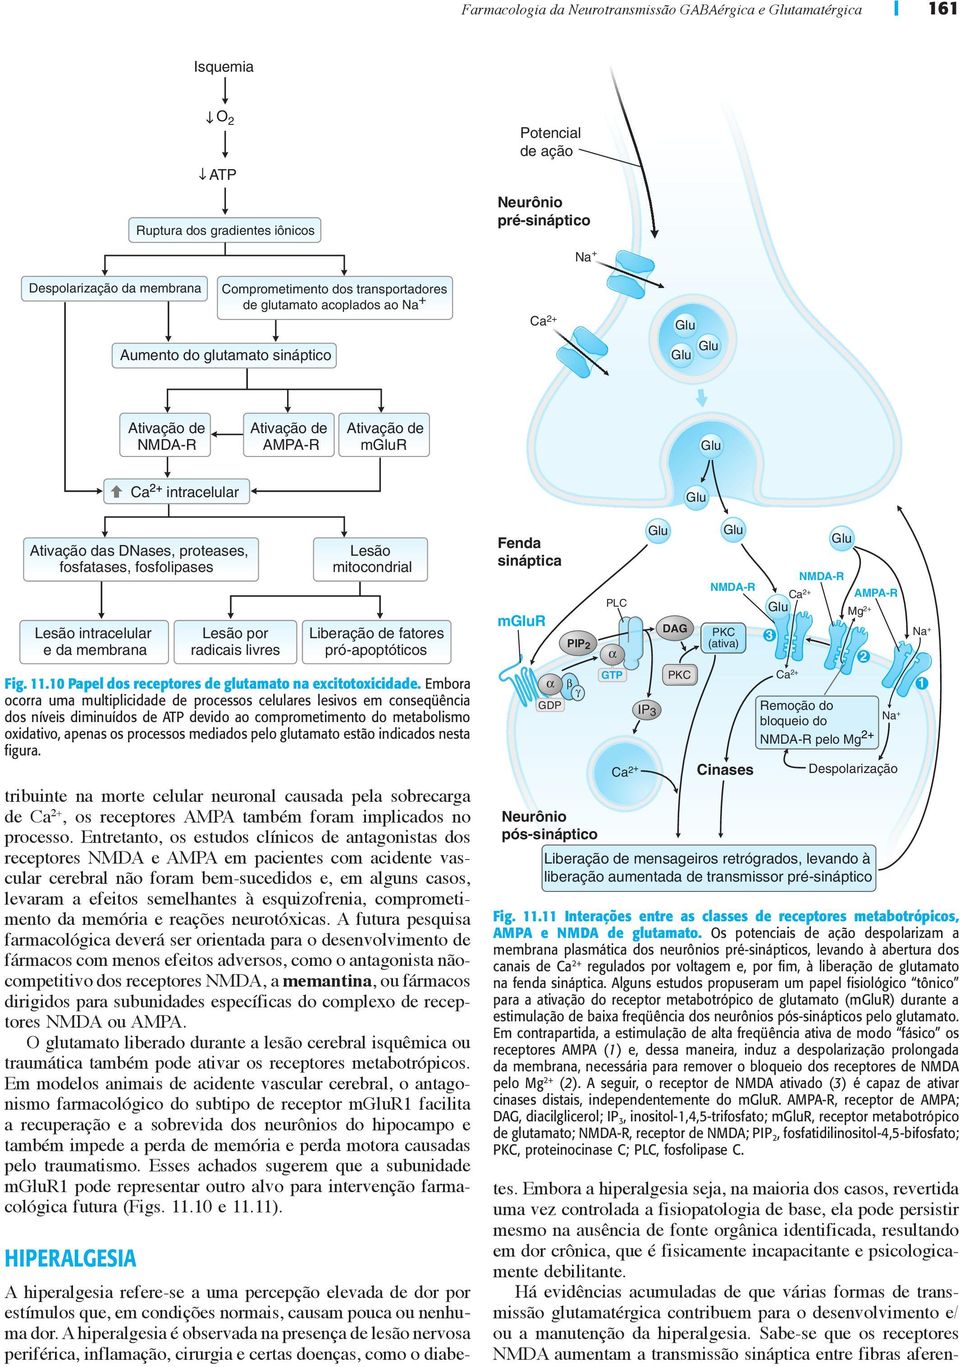 fosfatases, fosfolipases Lesão intracelular e da membrana tribuinte na morte celular neuronal causada pela sobrecarga de Ca 2+, os receptores AMPA também foram implicados no processo.